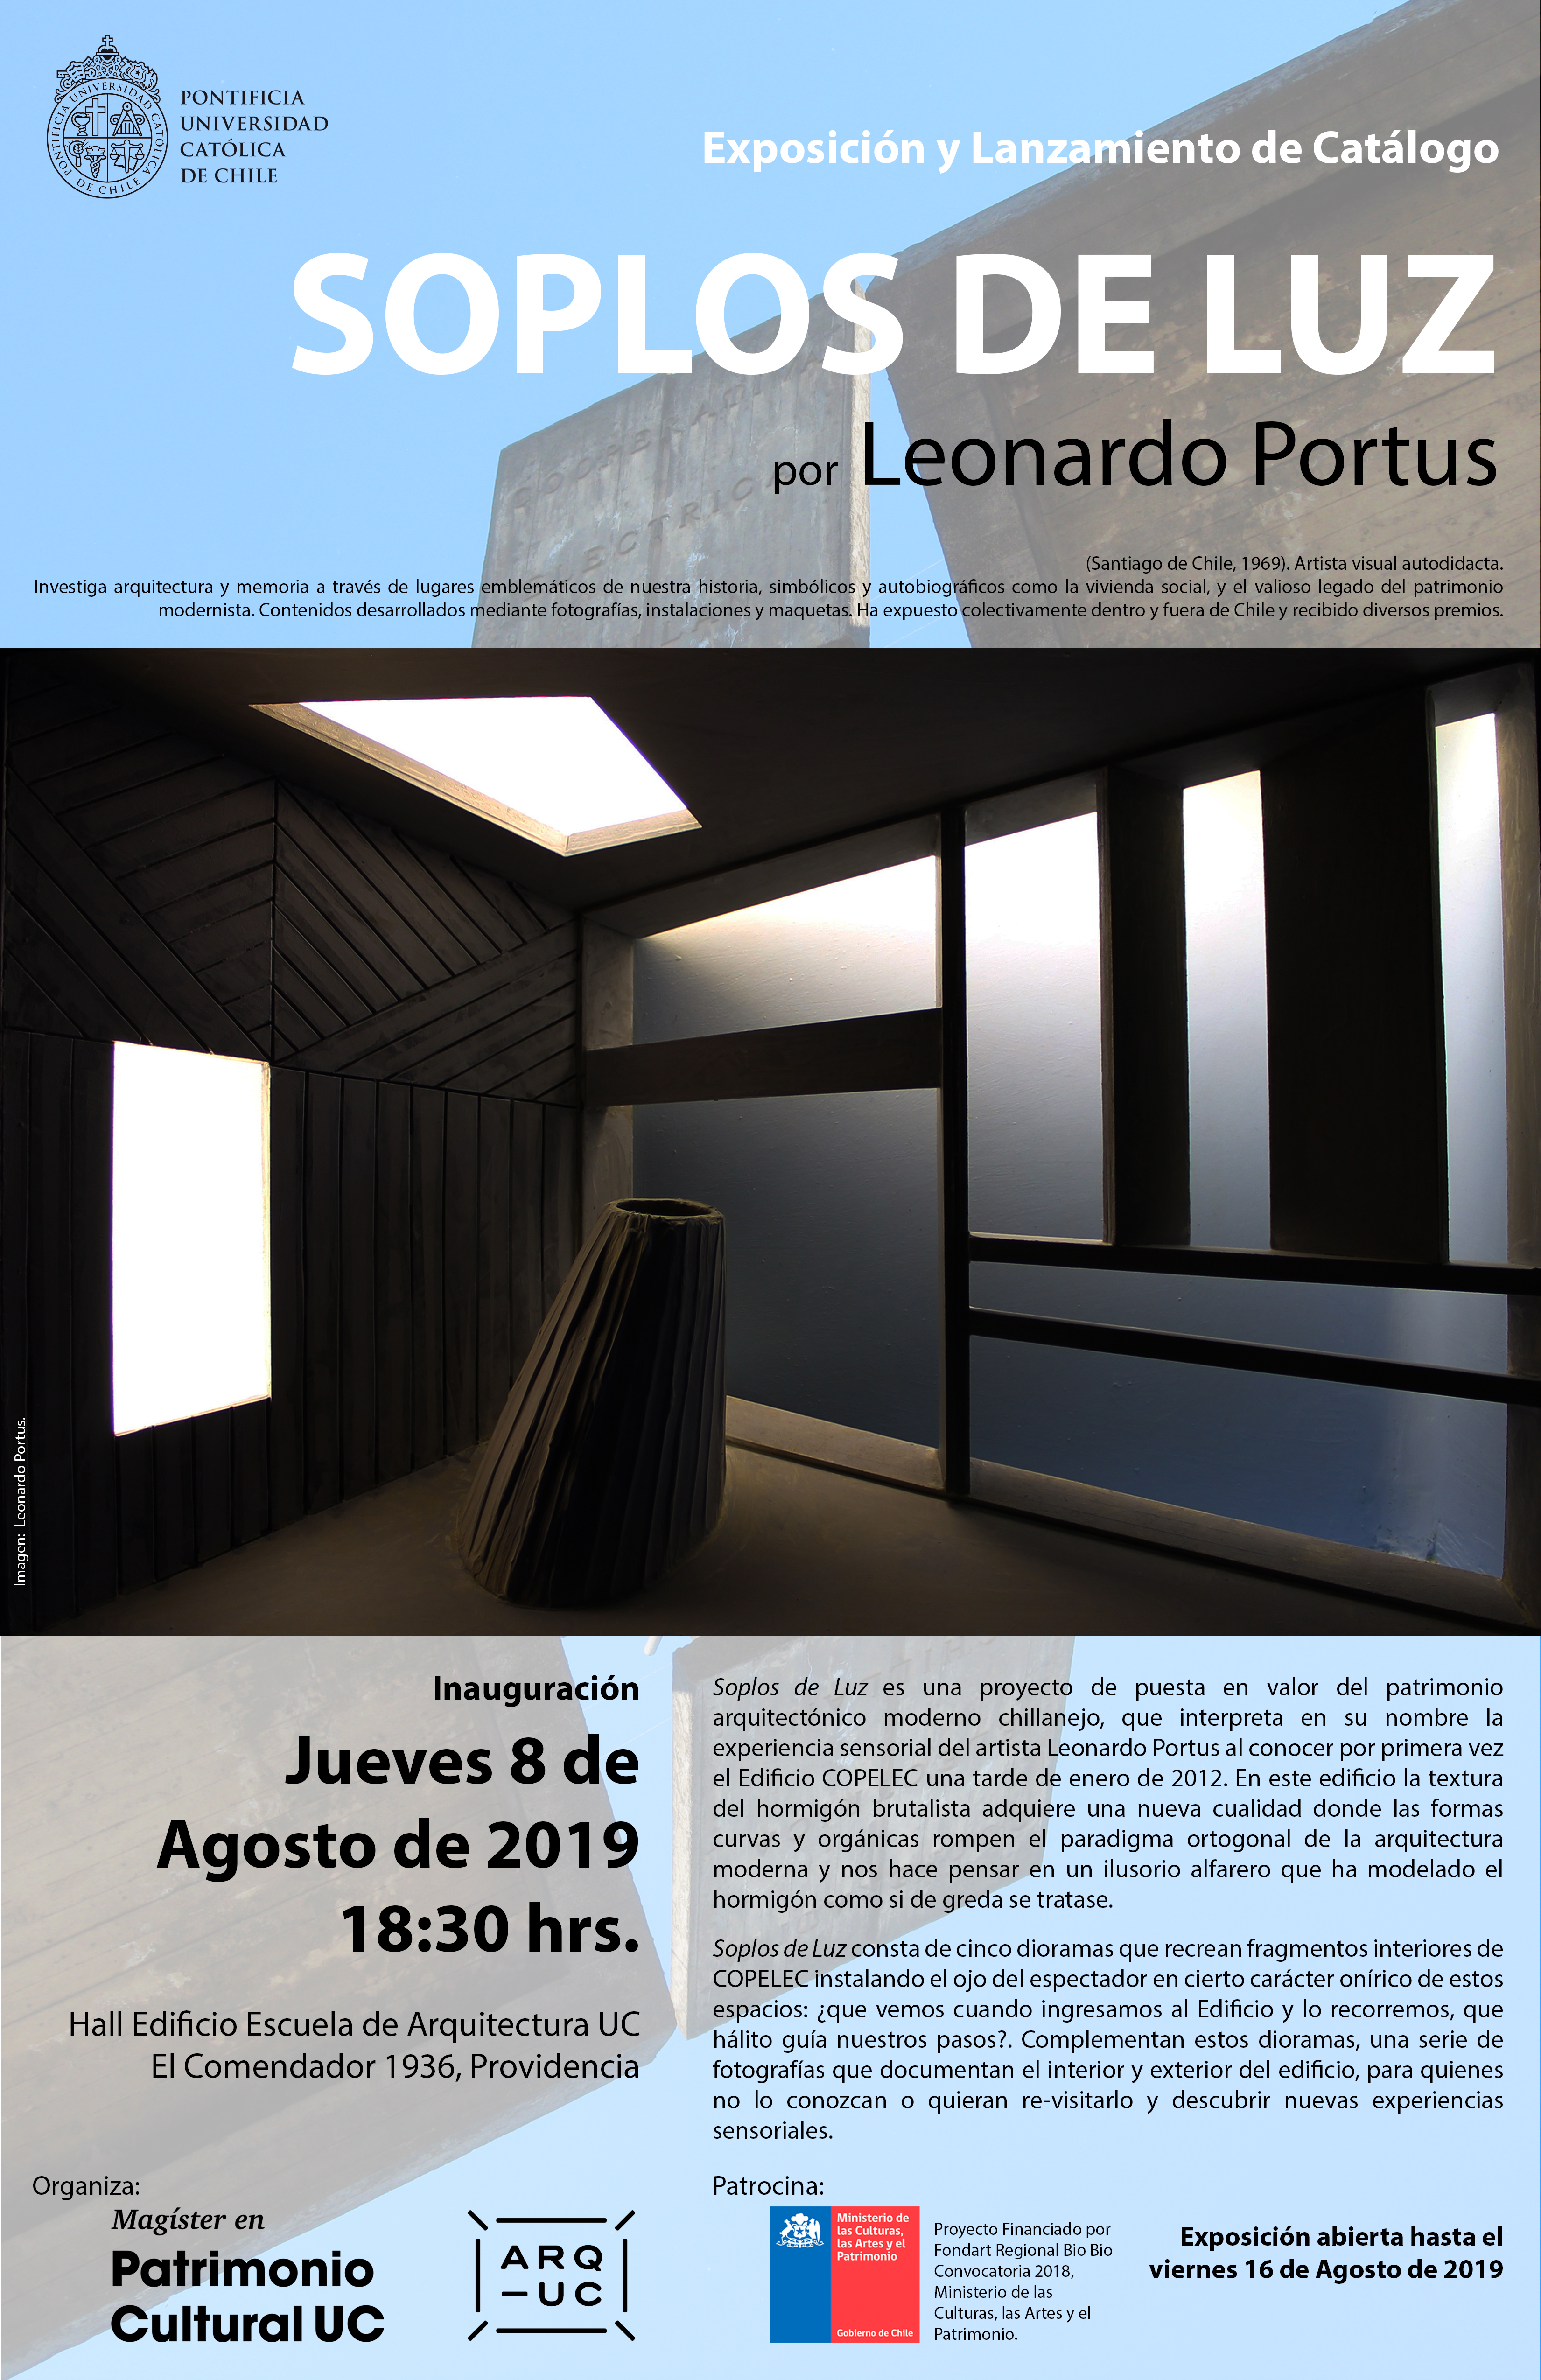 19-08-08_Exposicion_y_lanzamiento_catalogo_Soplos_de_luz__Leonardo_Portus.jpg